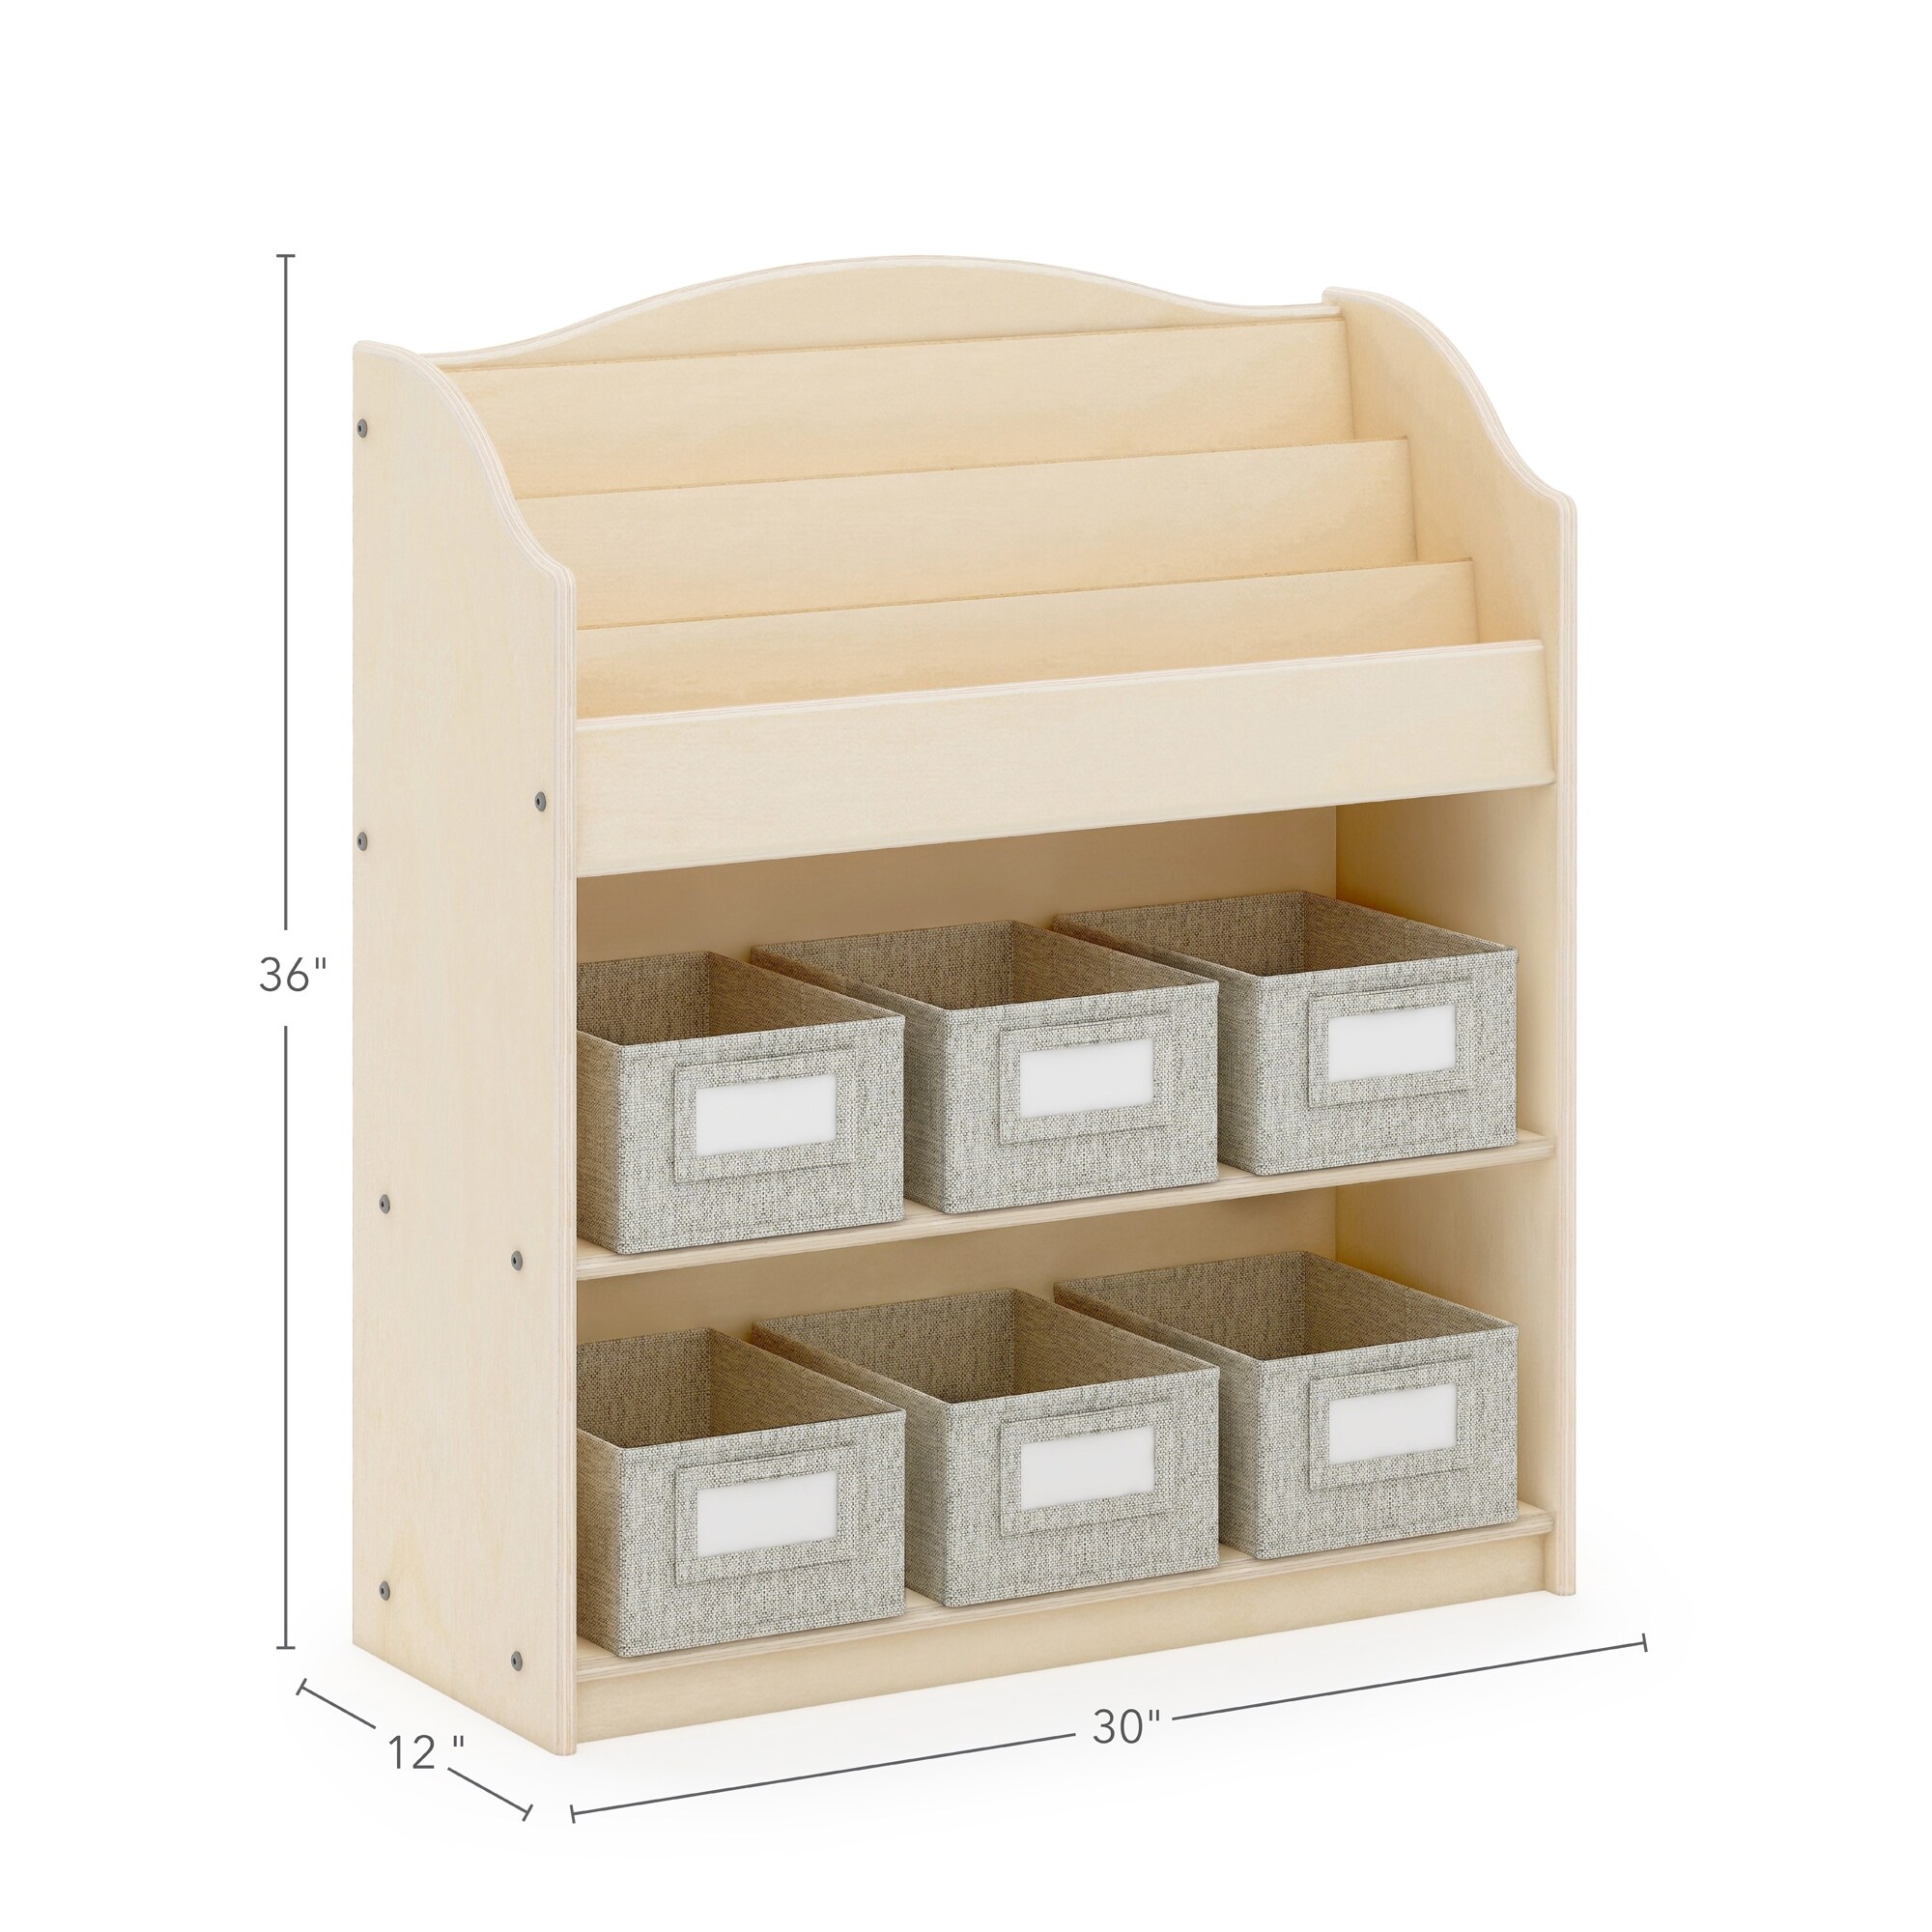 Guidecraft EdQ 8 Cubby Bin Storage Organizer 30 - Natural